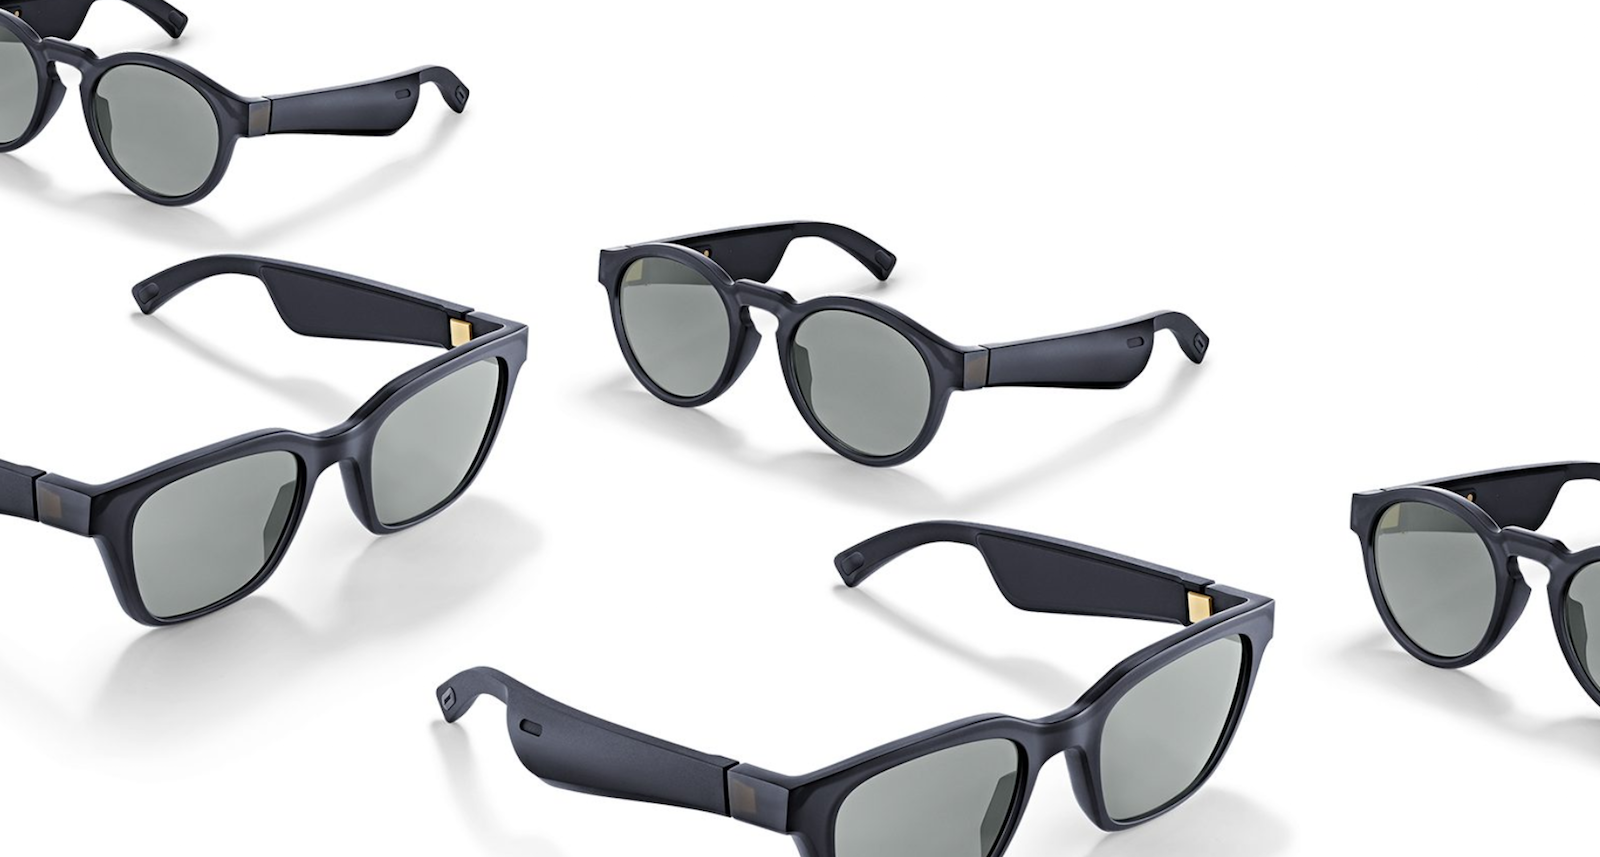 Bose smart sunglasses